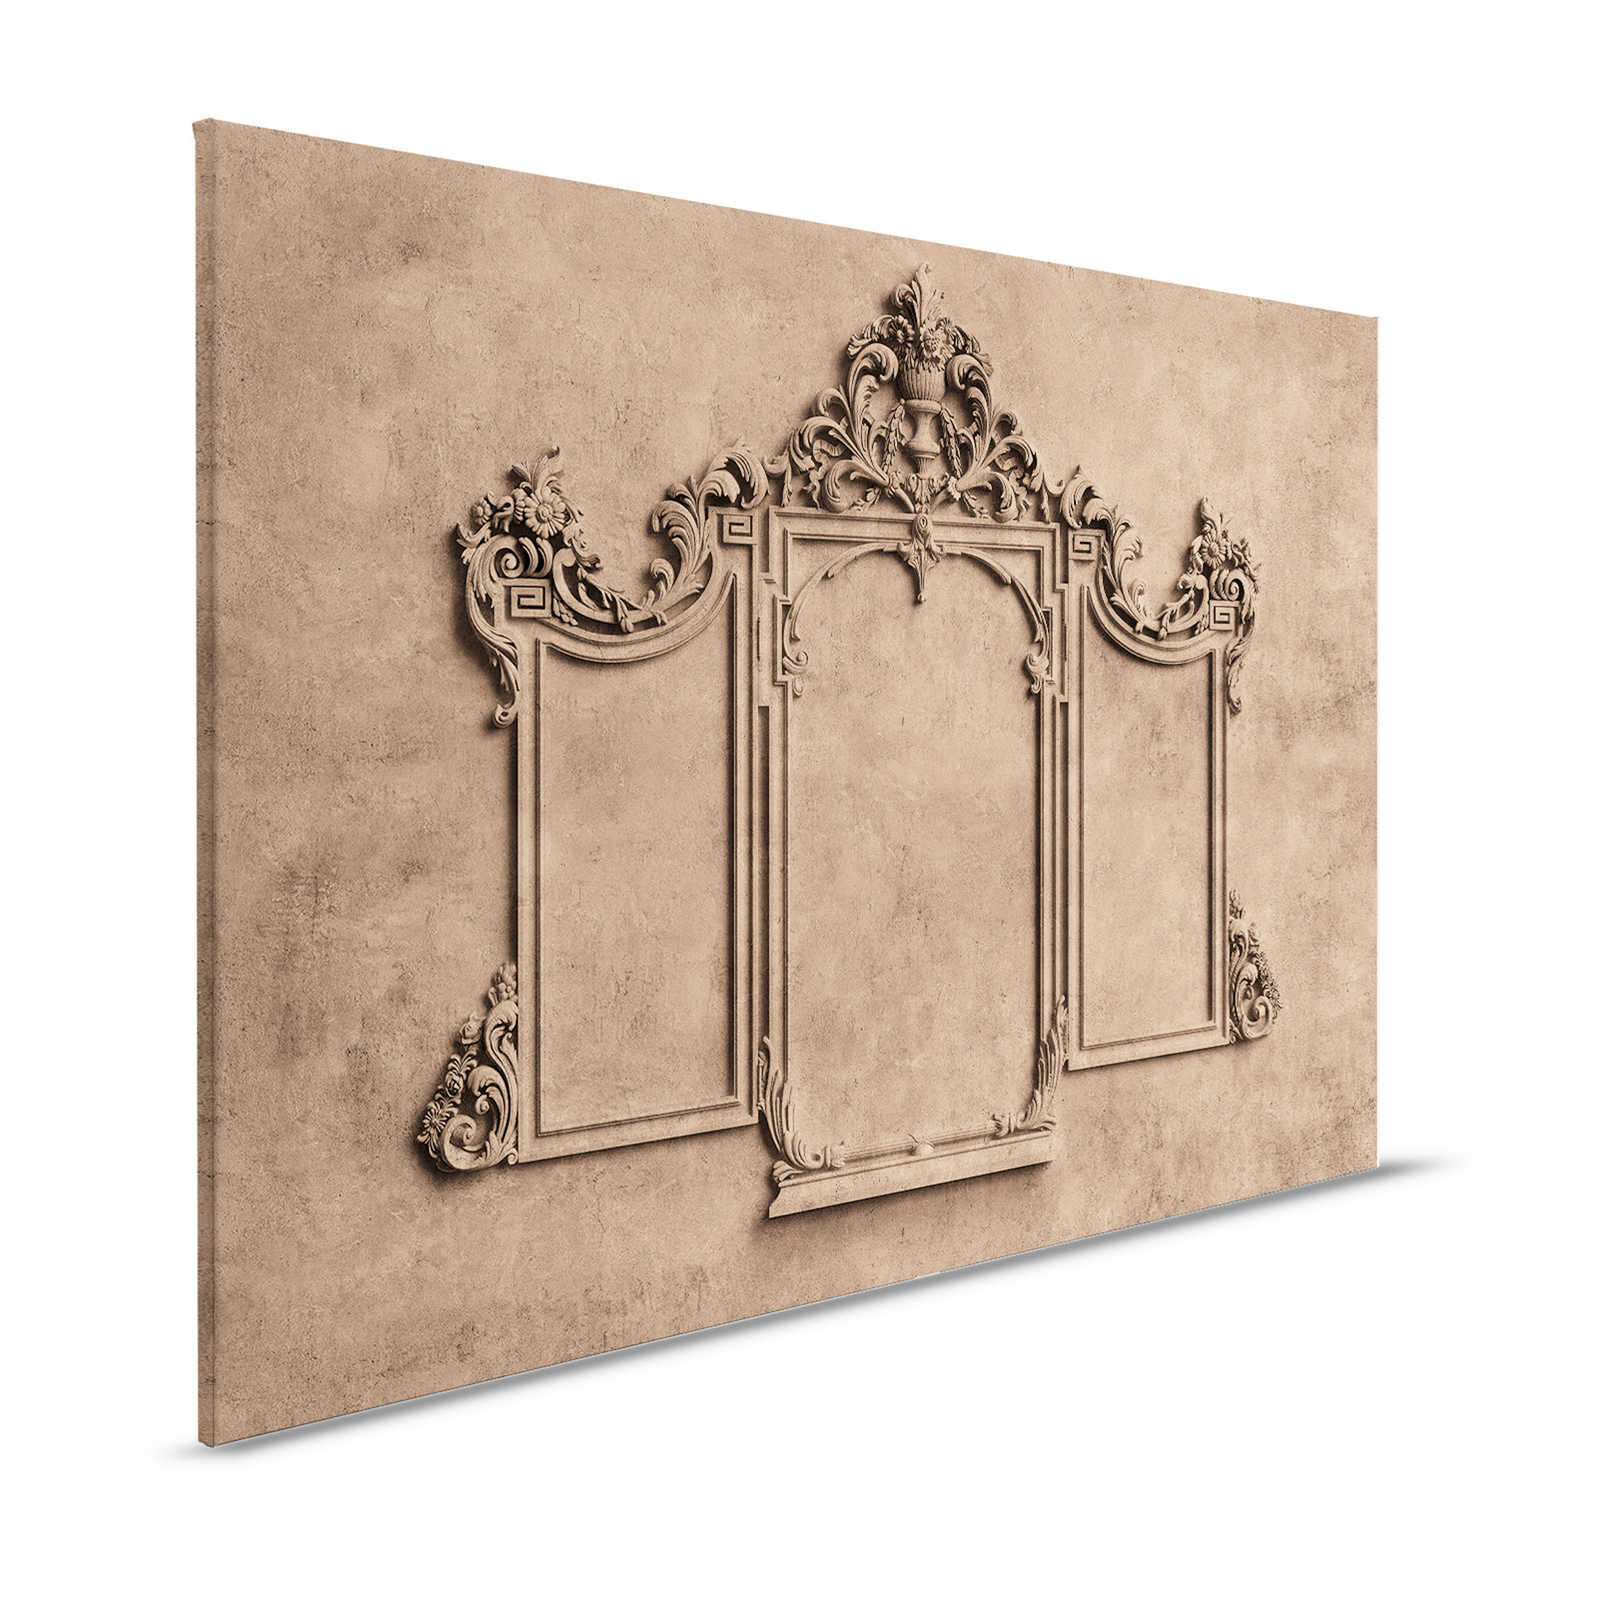 Lione 1 - Quadro su tela 3D con cornice in stucco e aspetto in gesso di colore marrone - 1,20 m x 0,80 m
